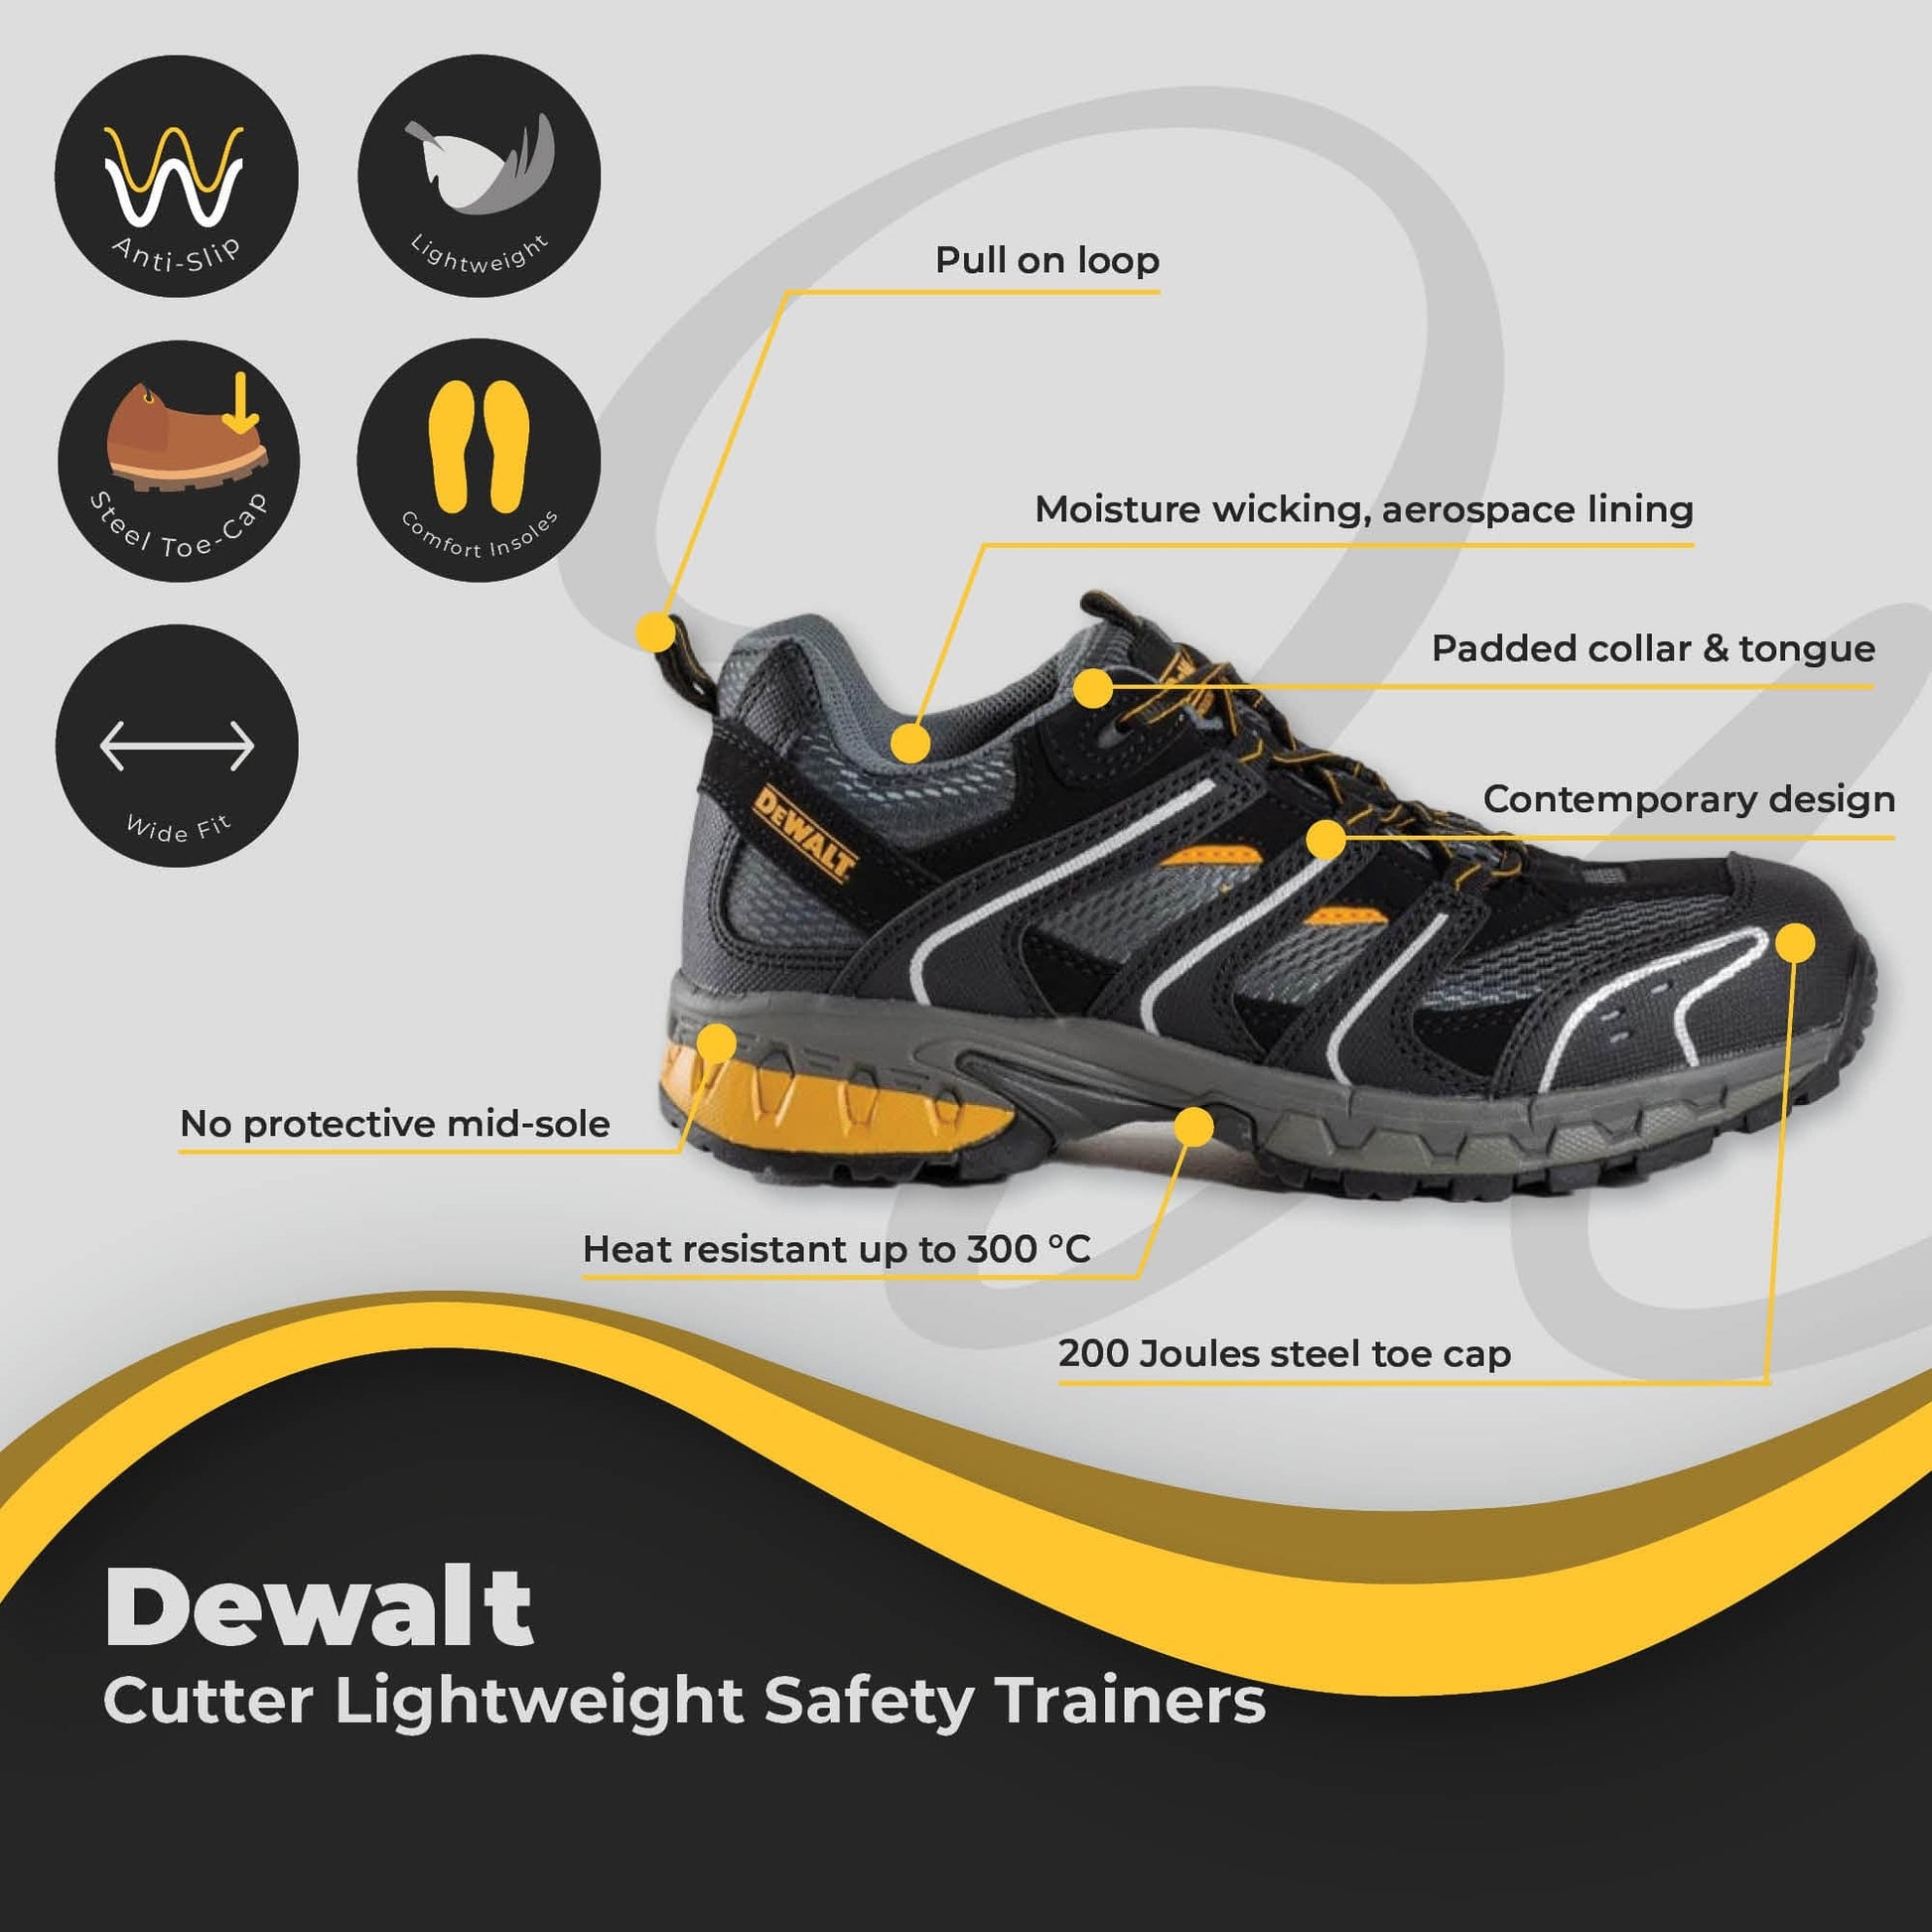 dewalt cutter lightweight safety trainers